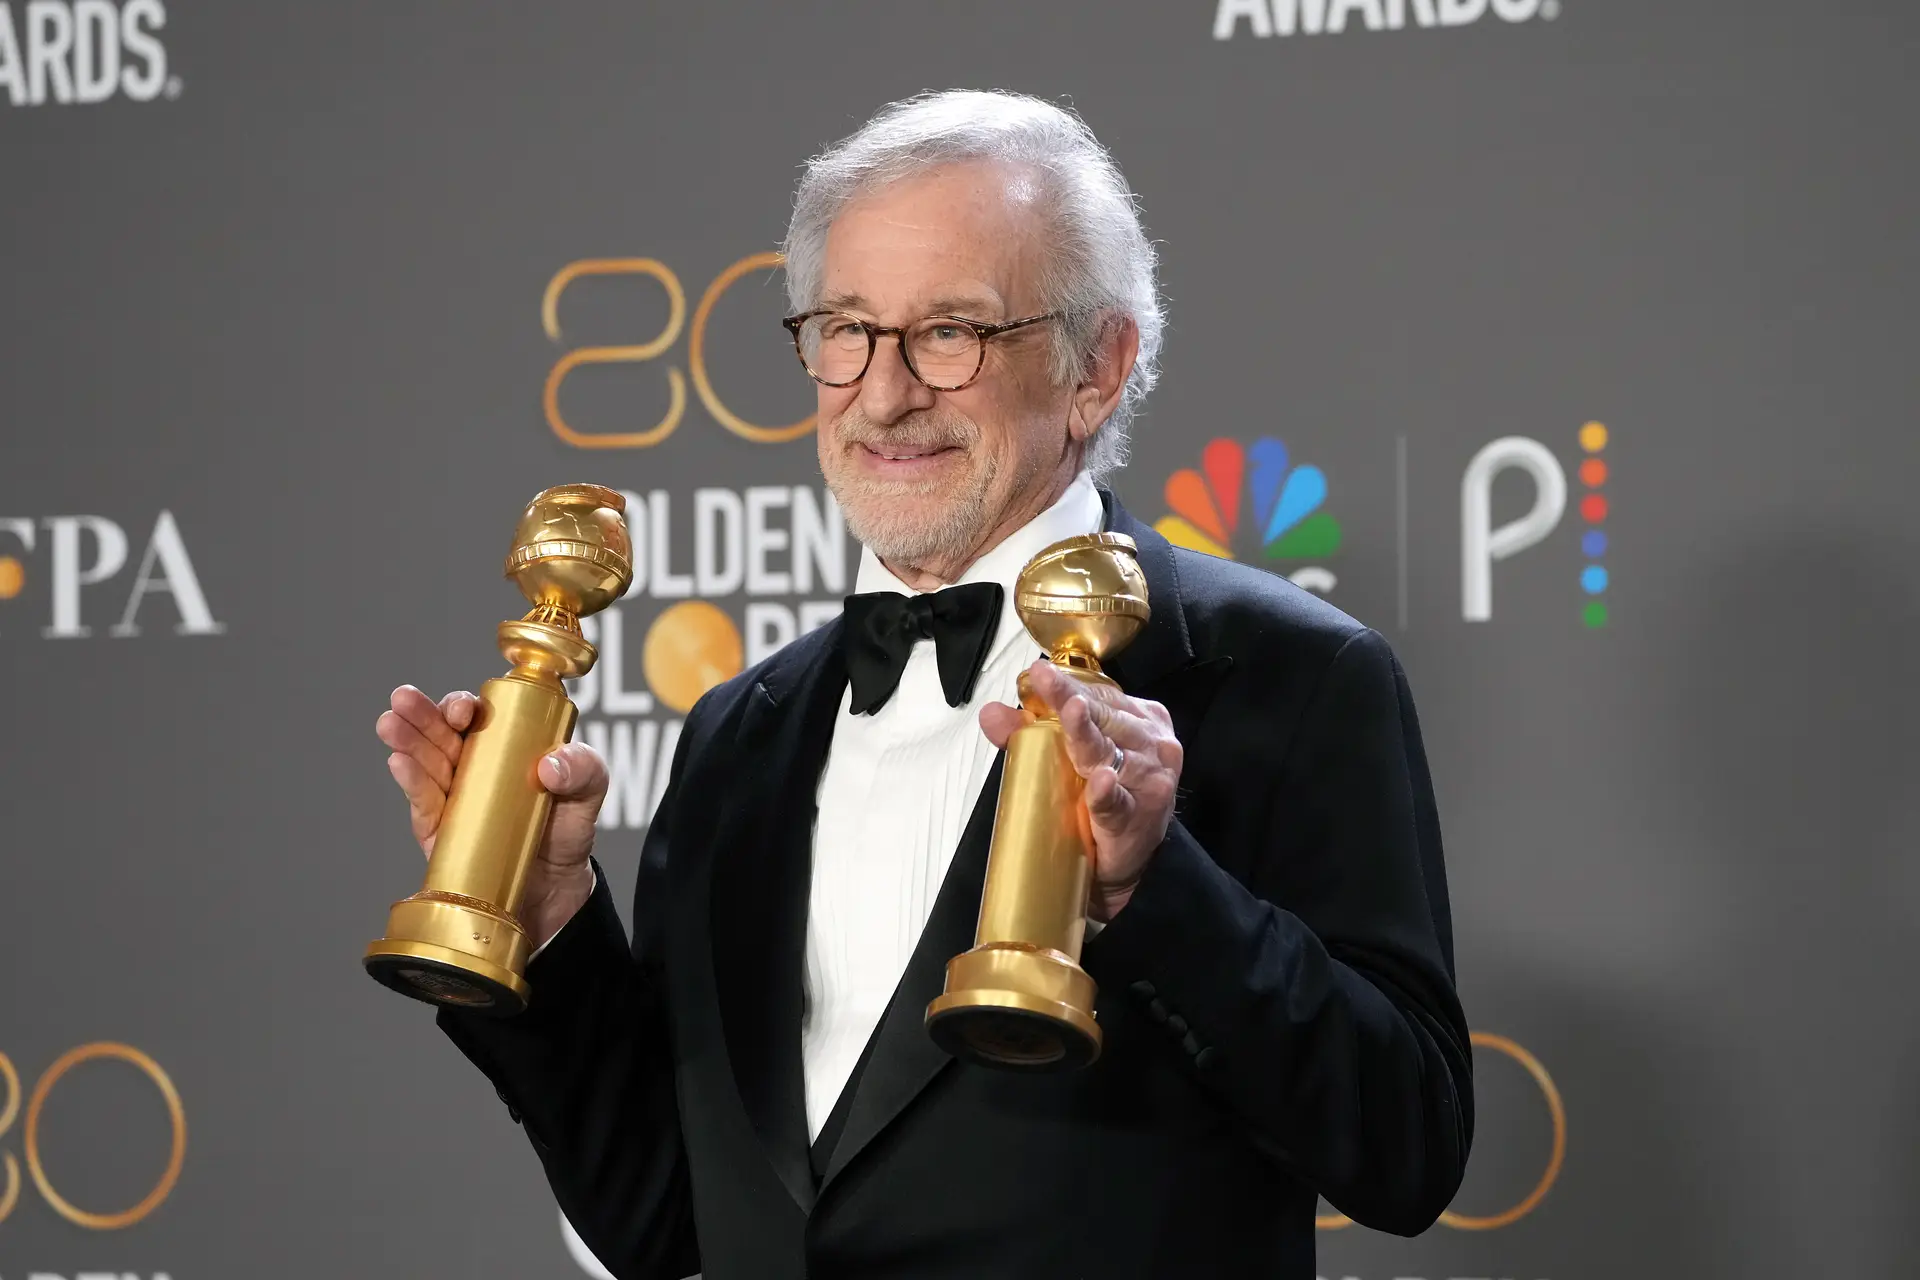 Spielberg nos Globos de Ouro: ninguém sabe quem somos realmente até “termos a coragem contar a nossa história”